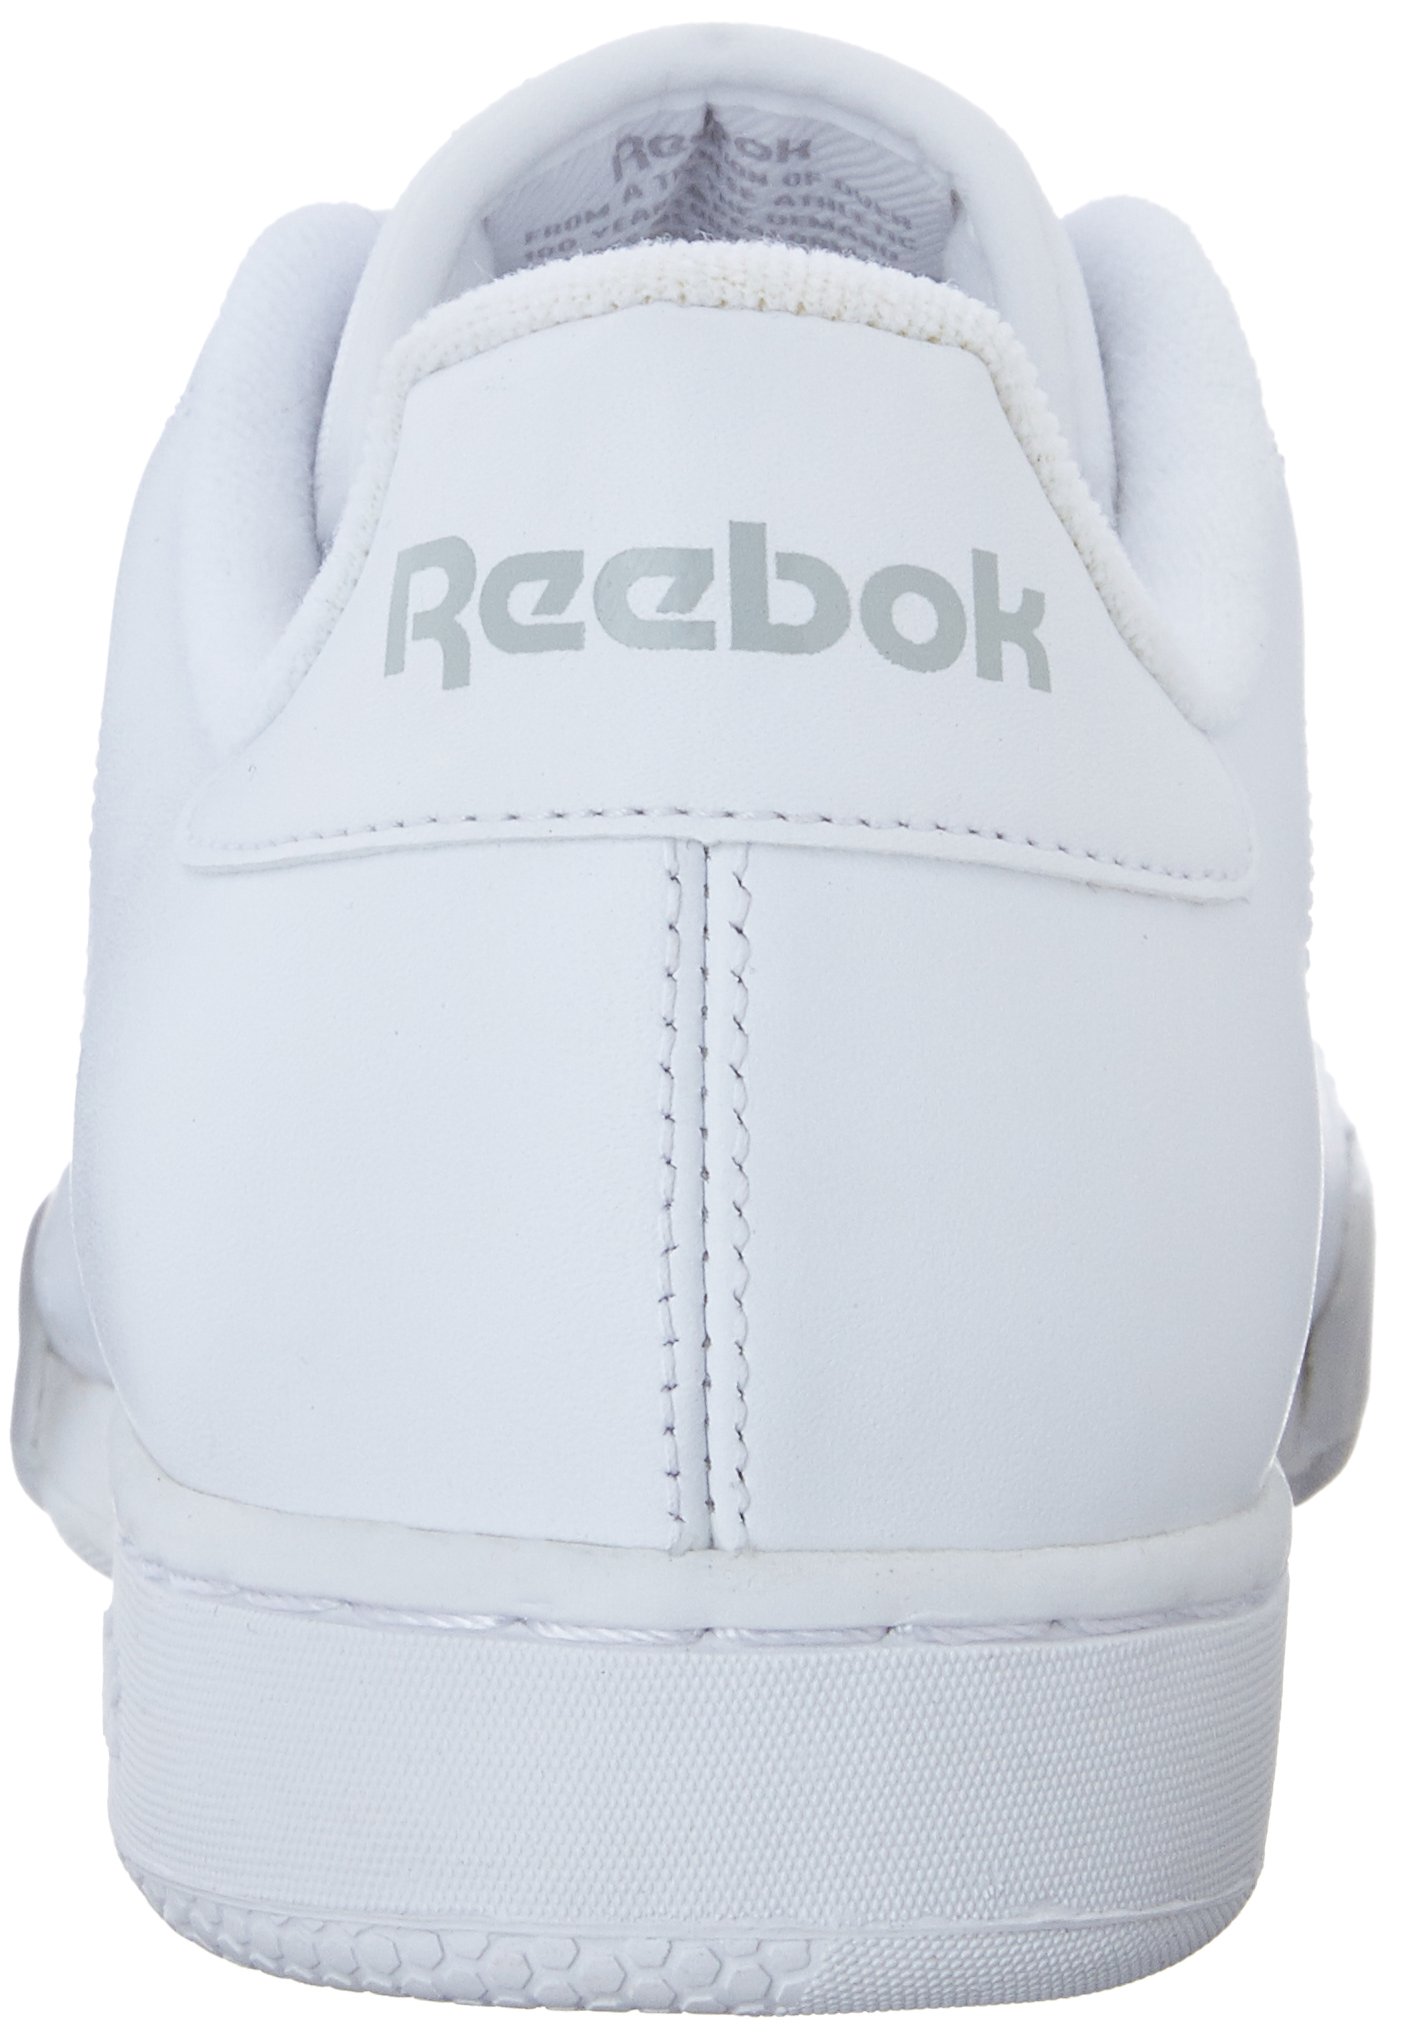 Reebok Men's Npc Ii Fashion Sneaker, white/light grey, 10 M US | Corals